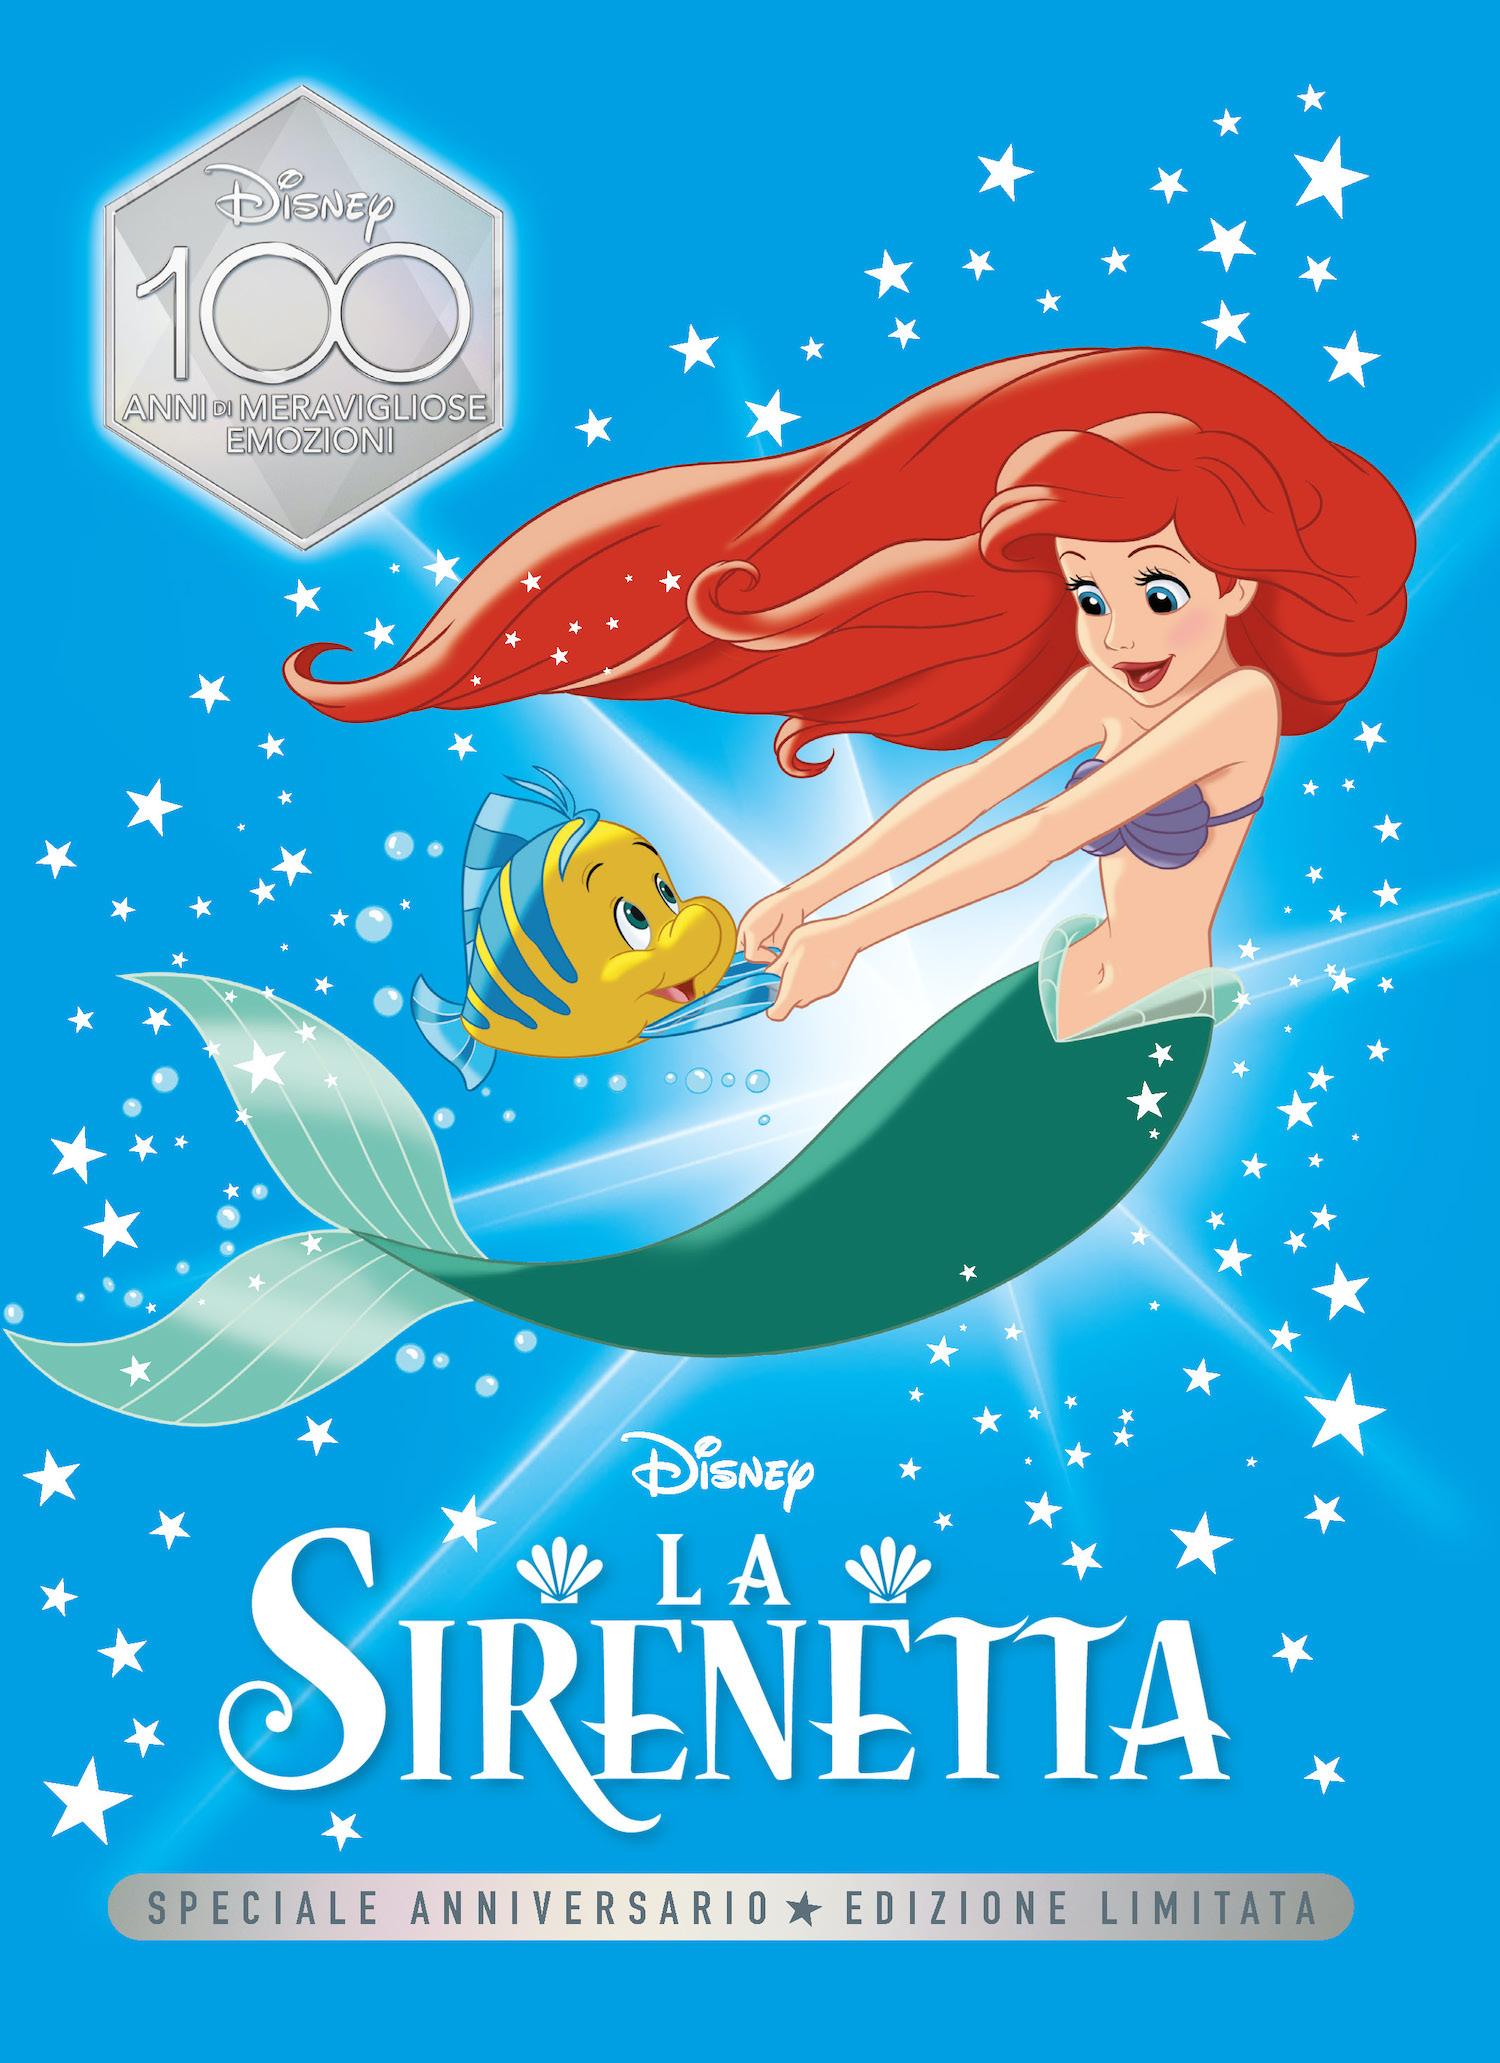 La Sirenetta Speciale Anniversario Edizione limitata